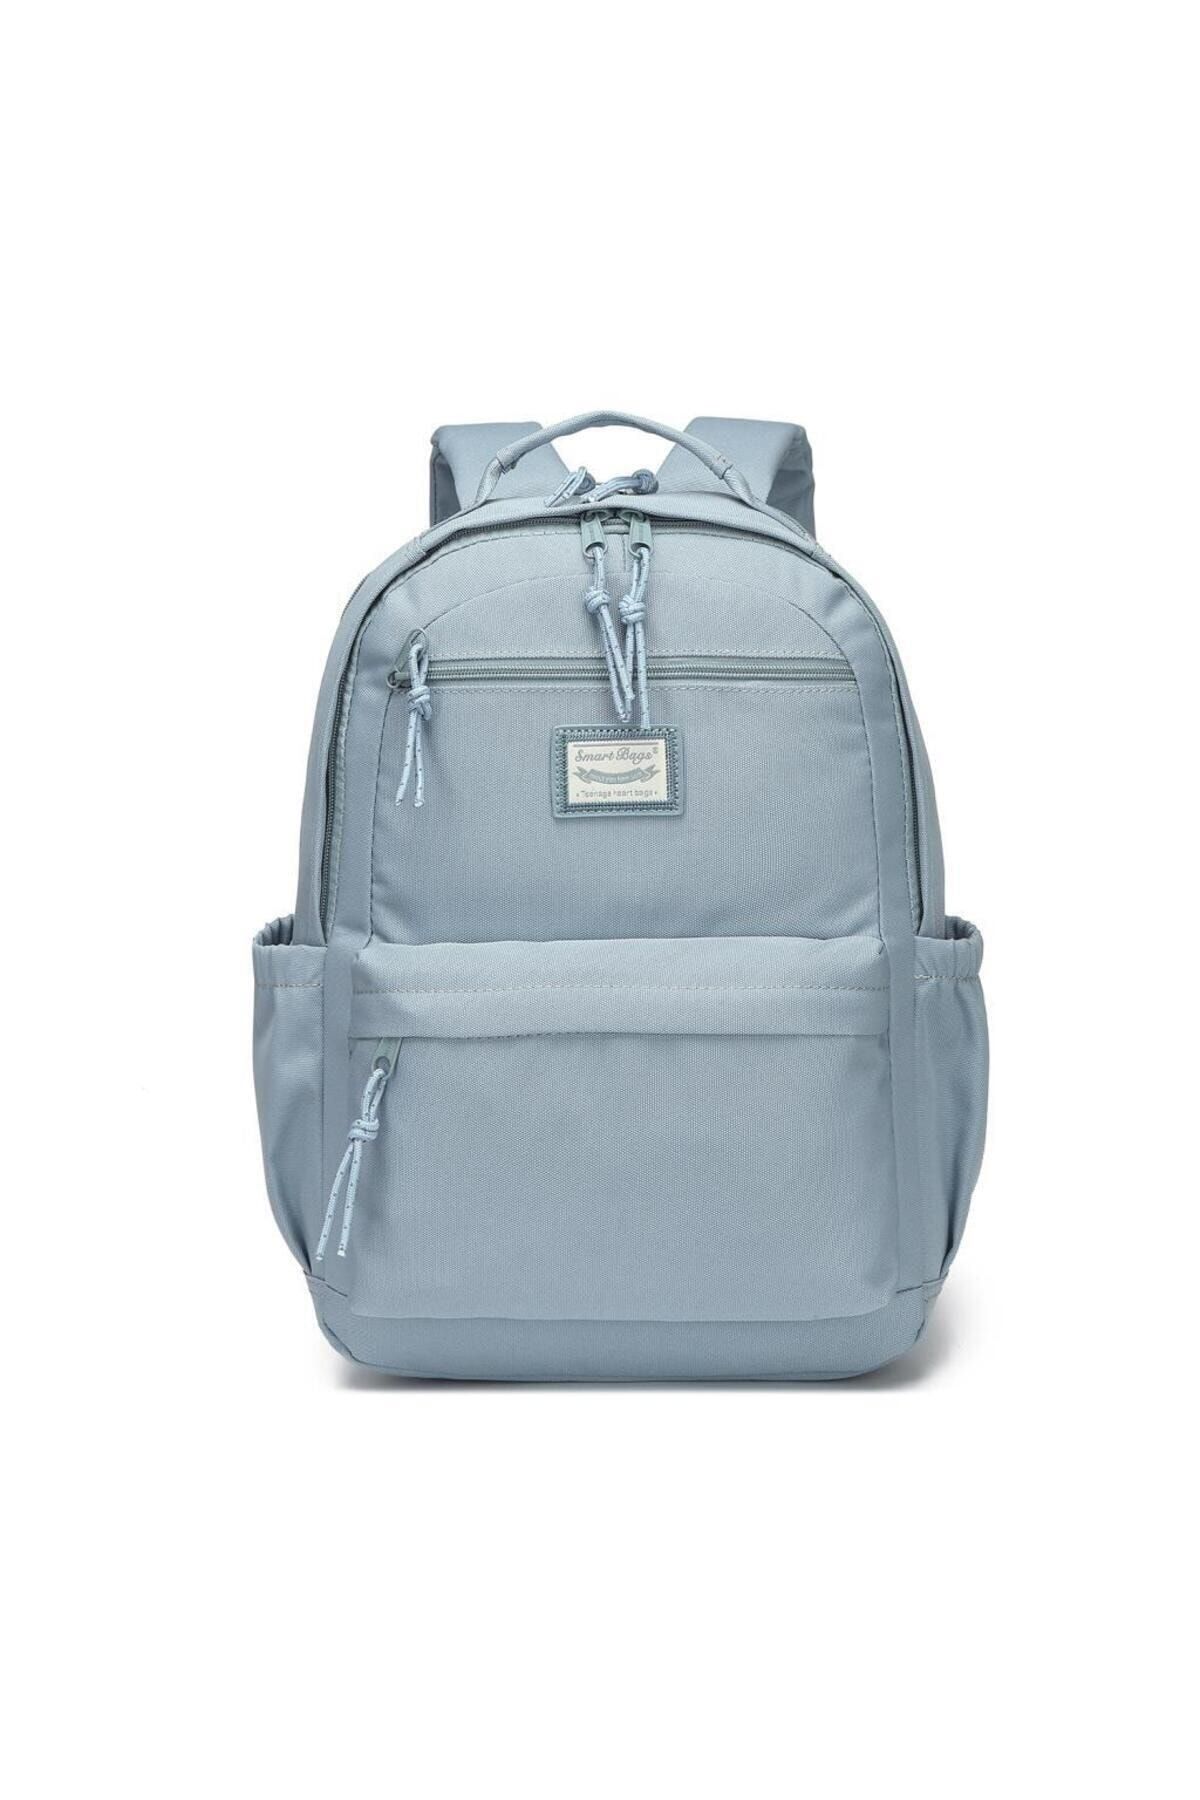 Smart Bags Sırt Çantası Okul Boyu Laptop Gözlü 3198